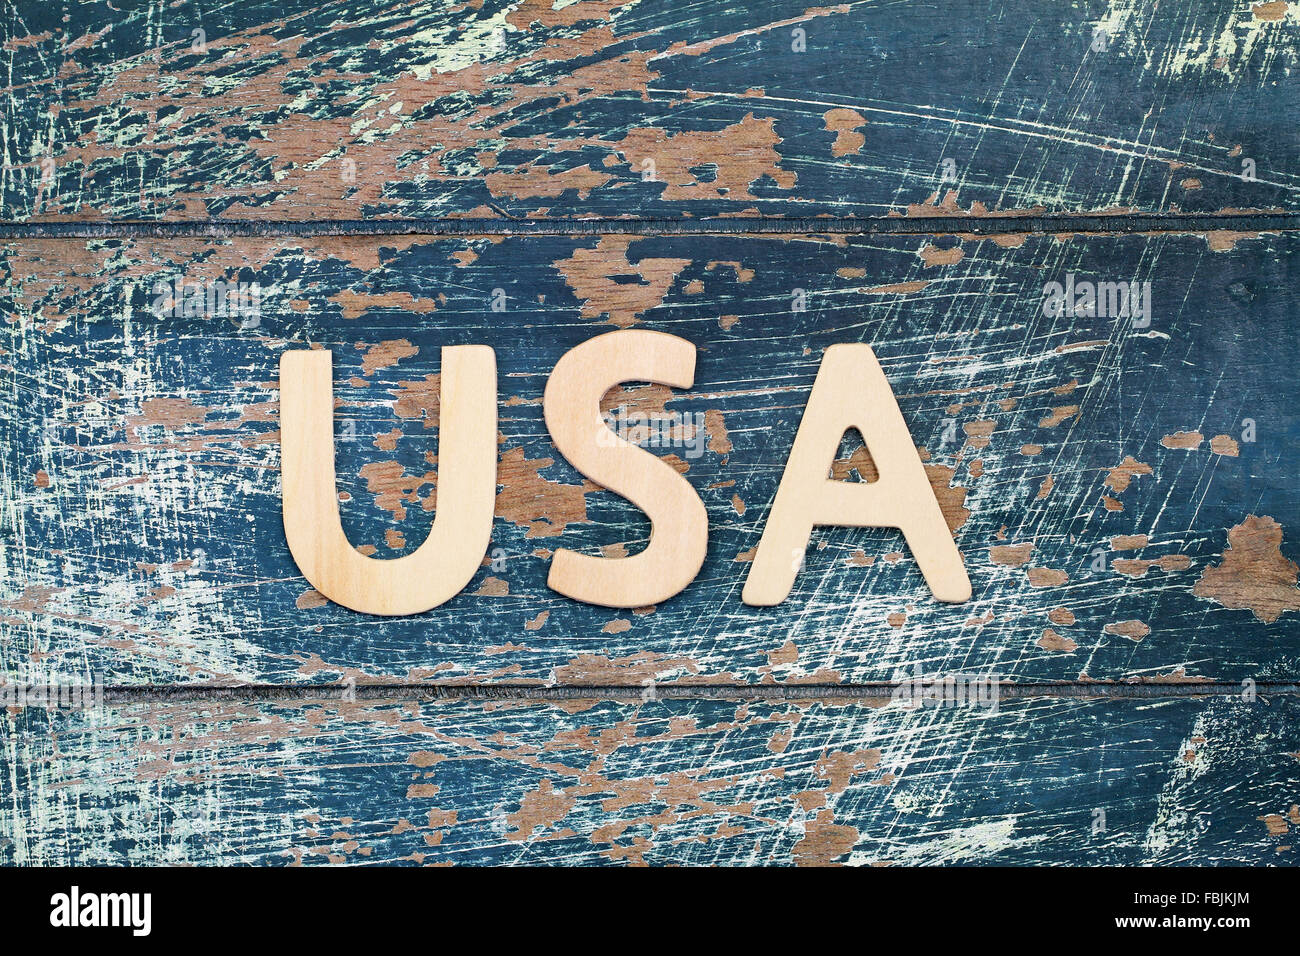 Stati Uniti d'America scritto con lettere in legno sulla superficie rustico Foto Stock